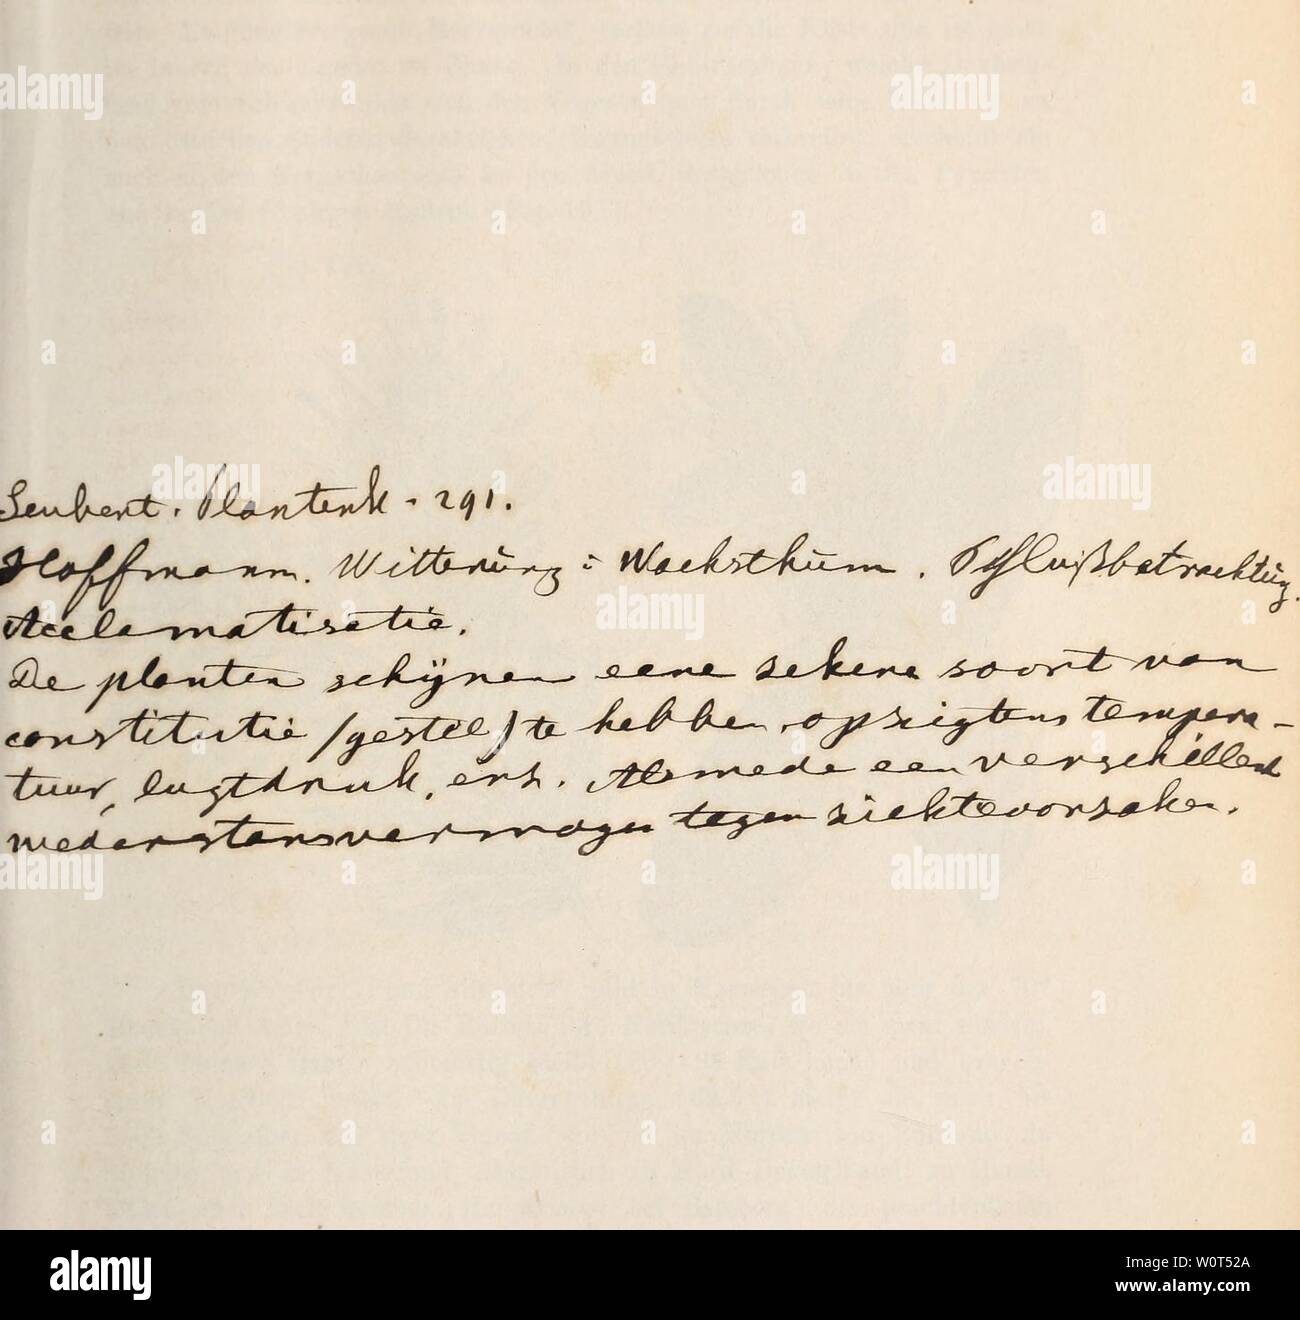 Immagine di archivio da pagina 602 di Der baum (1860). Der baum derbaum00scha Anno: 1860 " Foto Stock